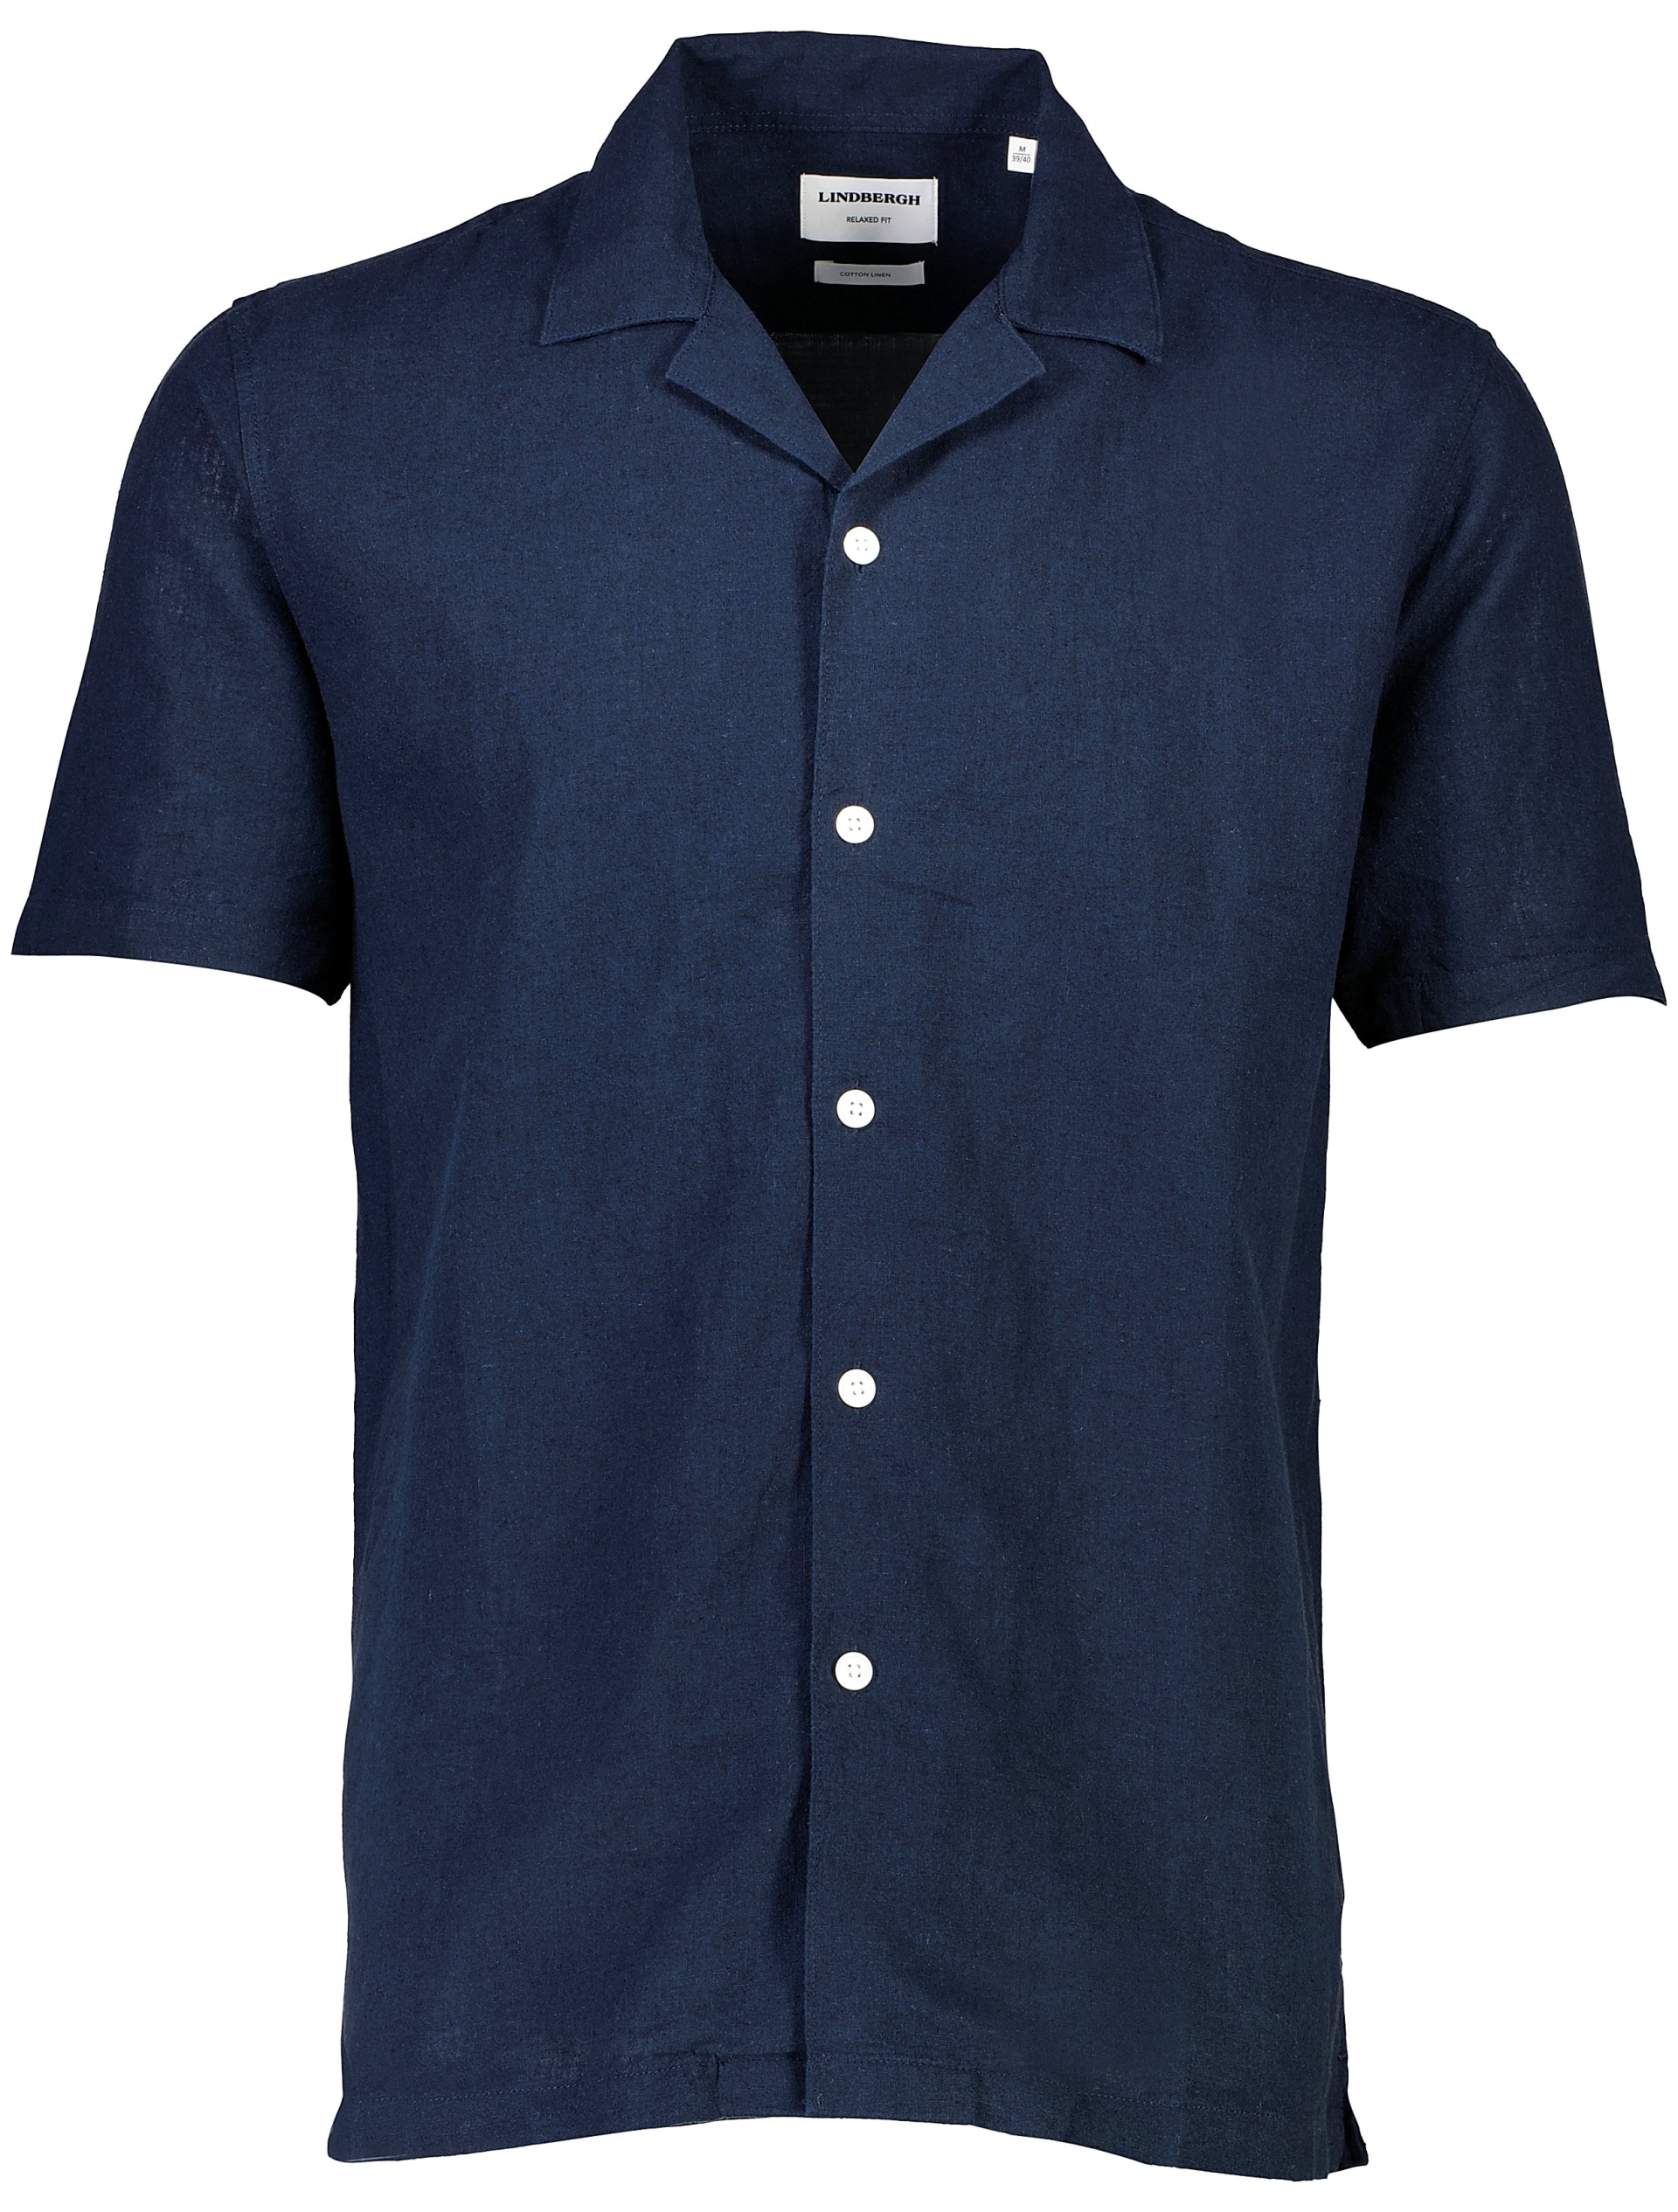 Lindbergh Linen shirt blue / navy